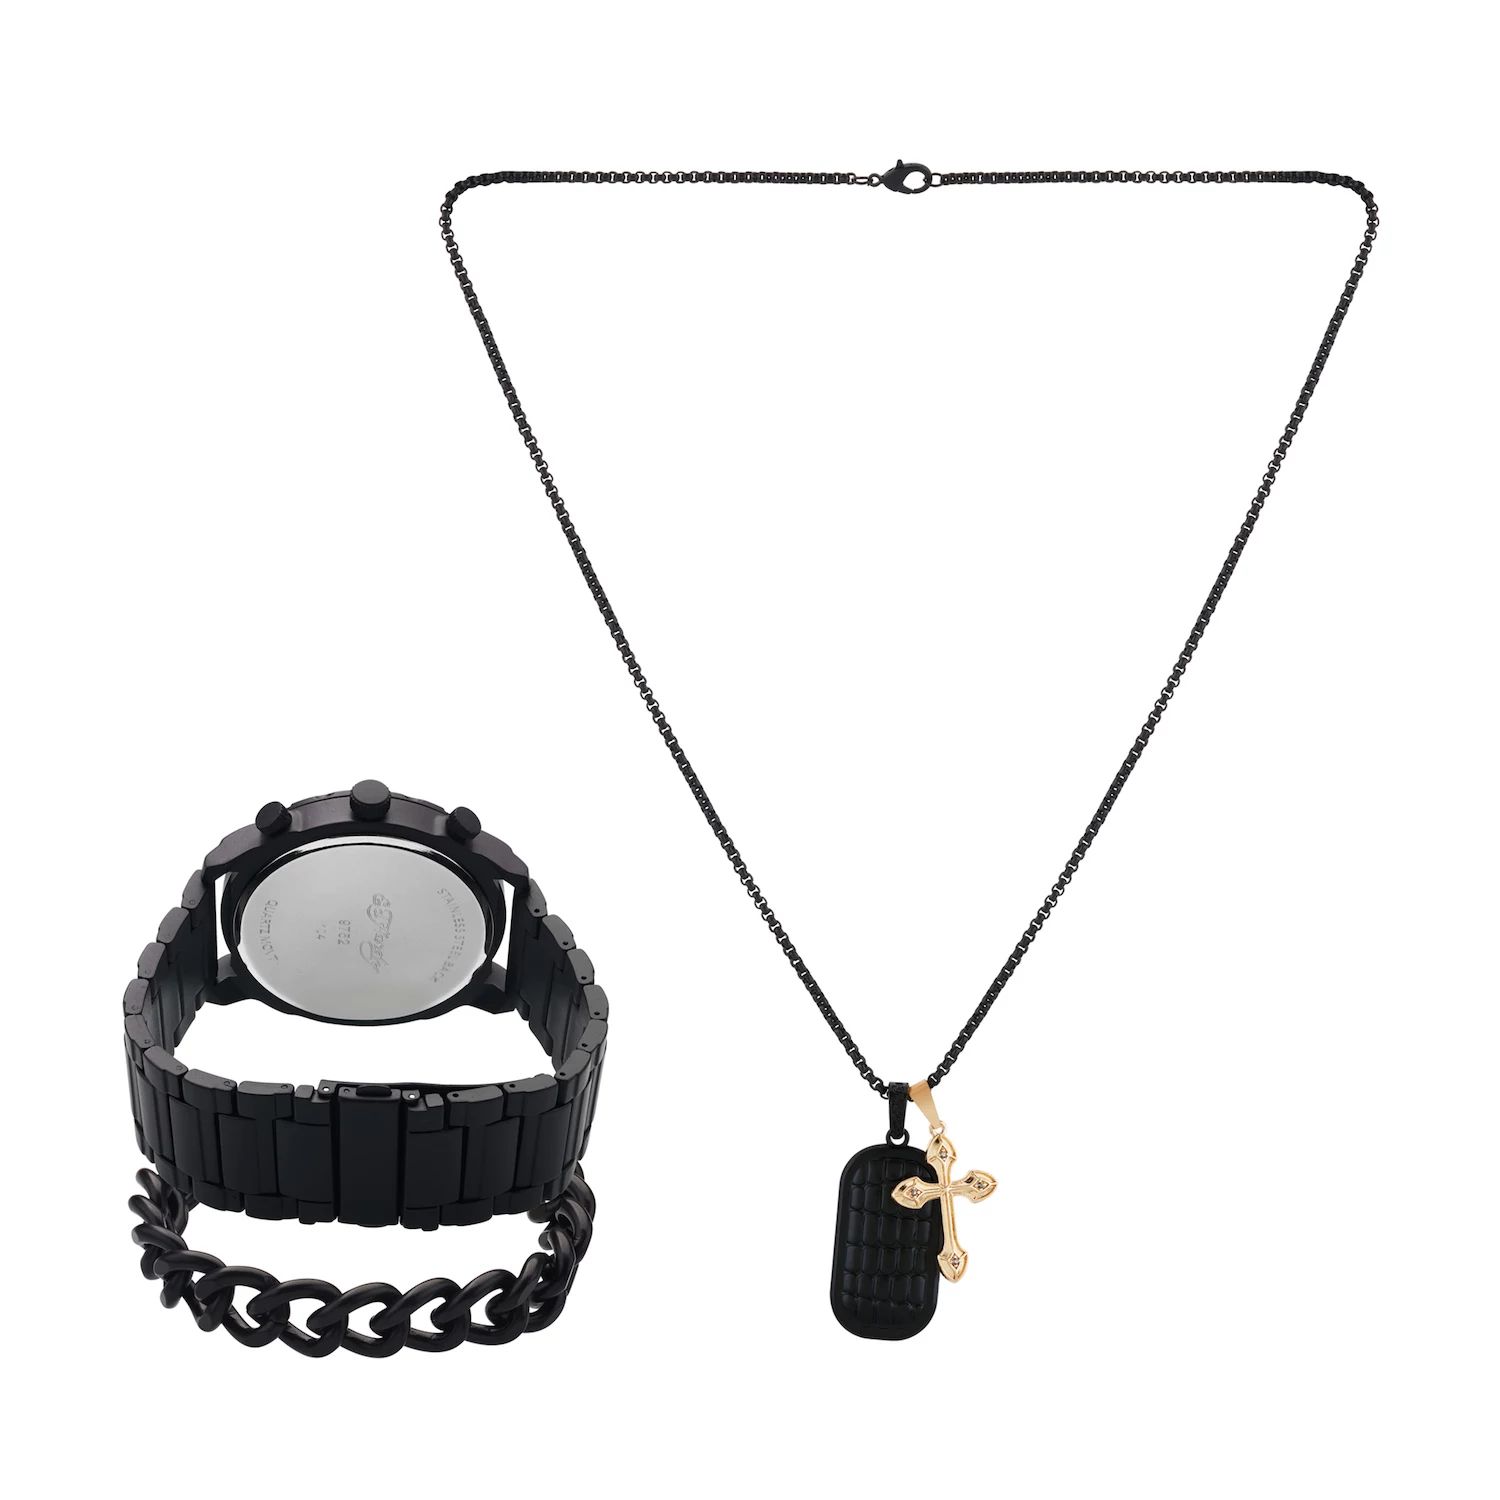 Подарочный набор из часов и ожерелья с черным металлическим браслетом 50 мм Ed Hardy